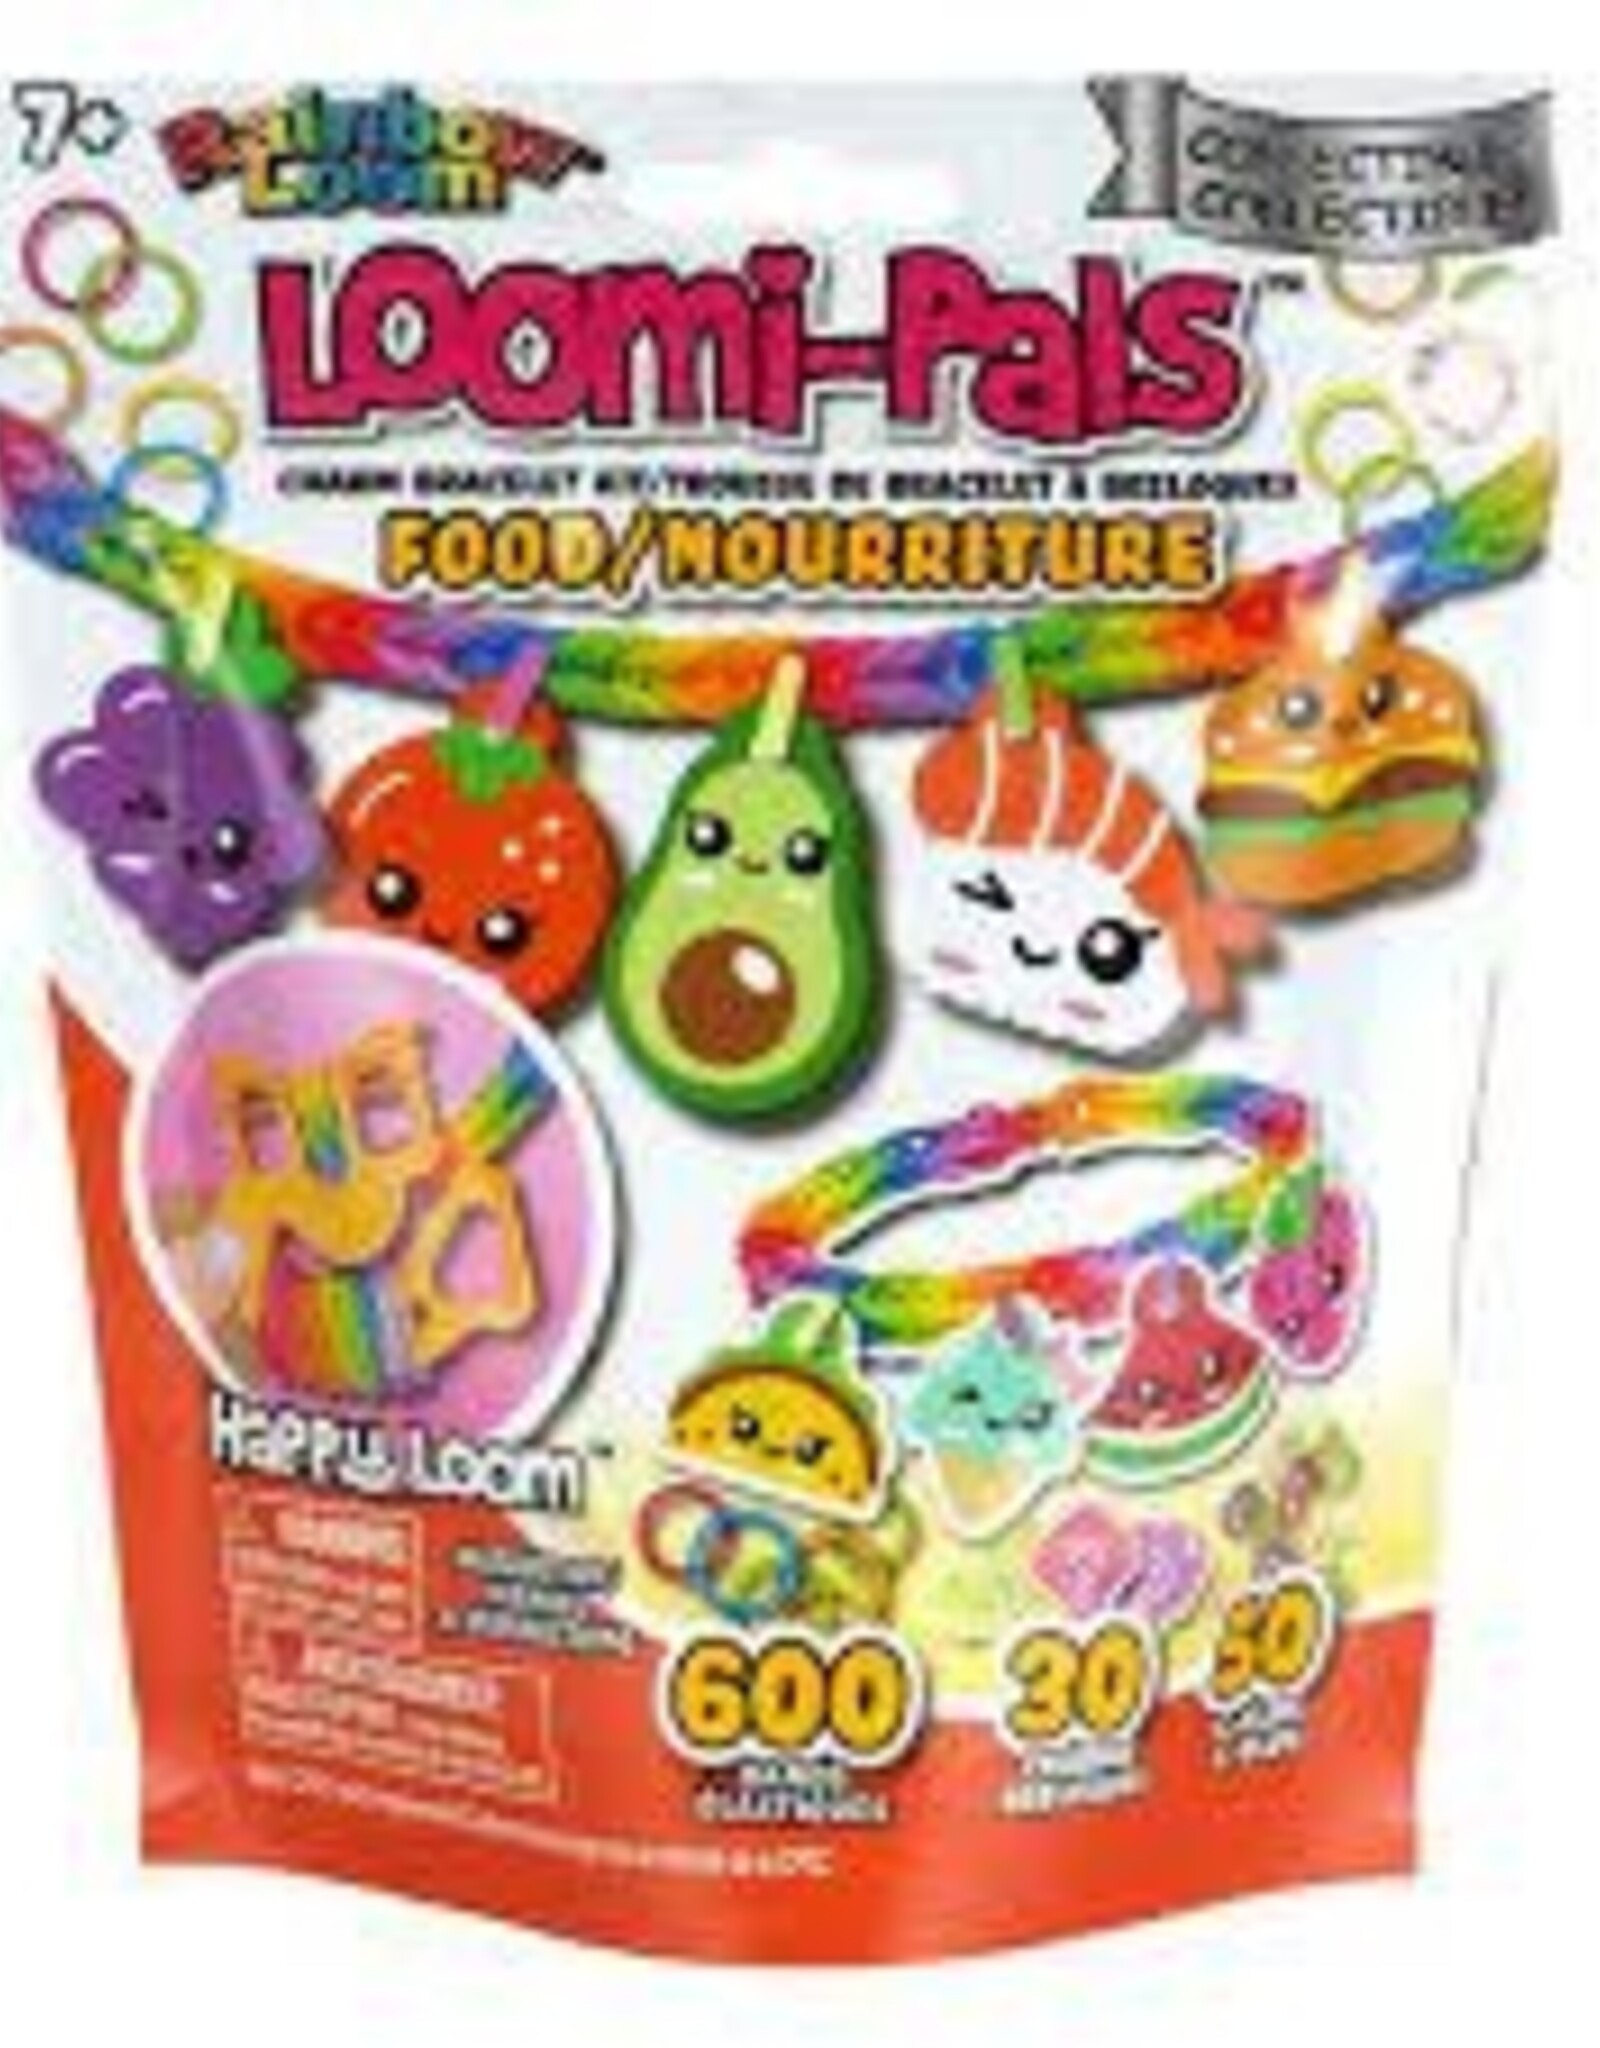 Rainbow Loom Loomi-Pal Collectible - Food